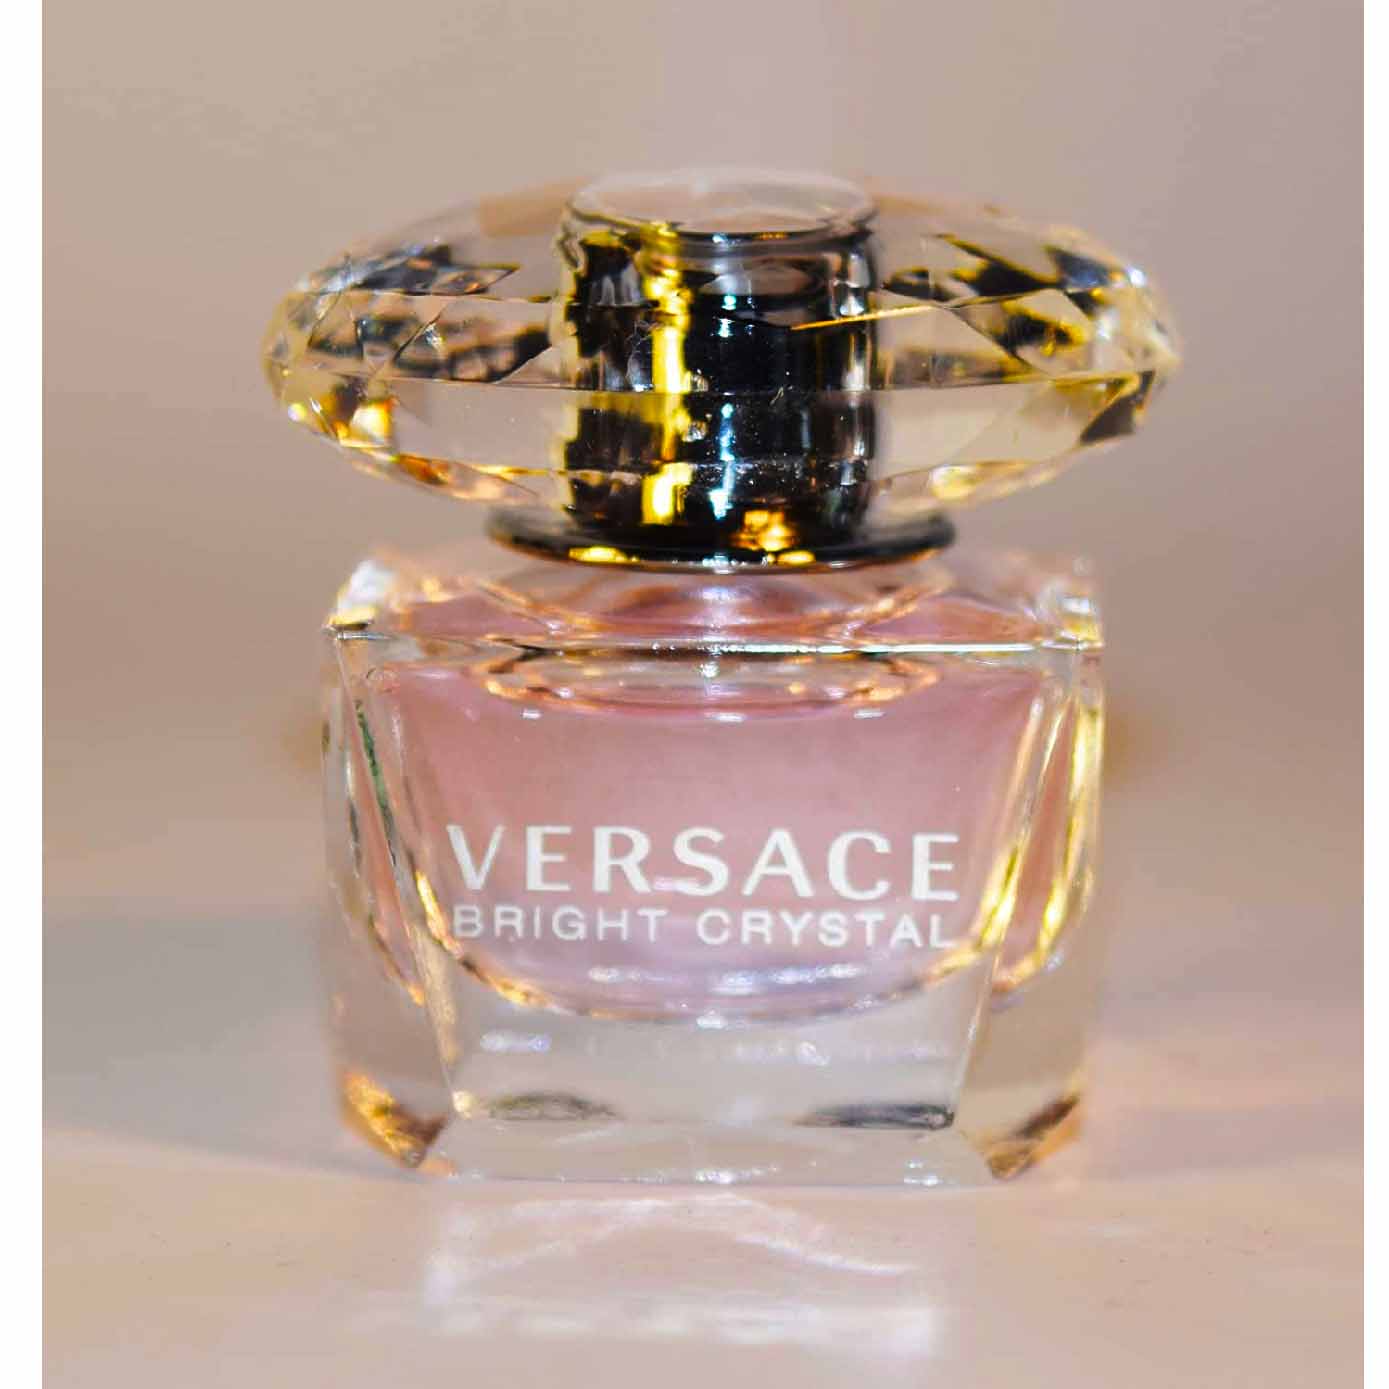 Versace Bright Crystal Eau De Toilette Miniature 5ml